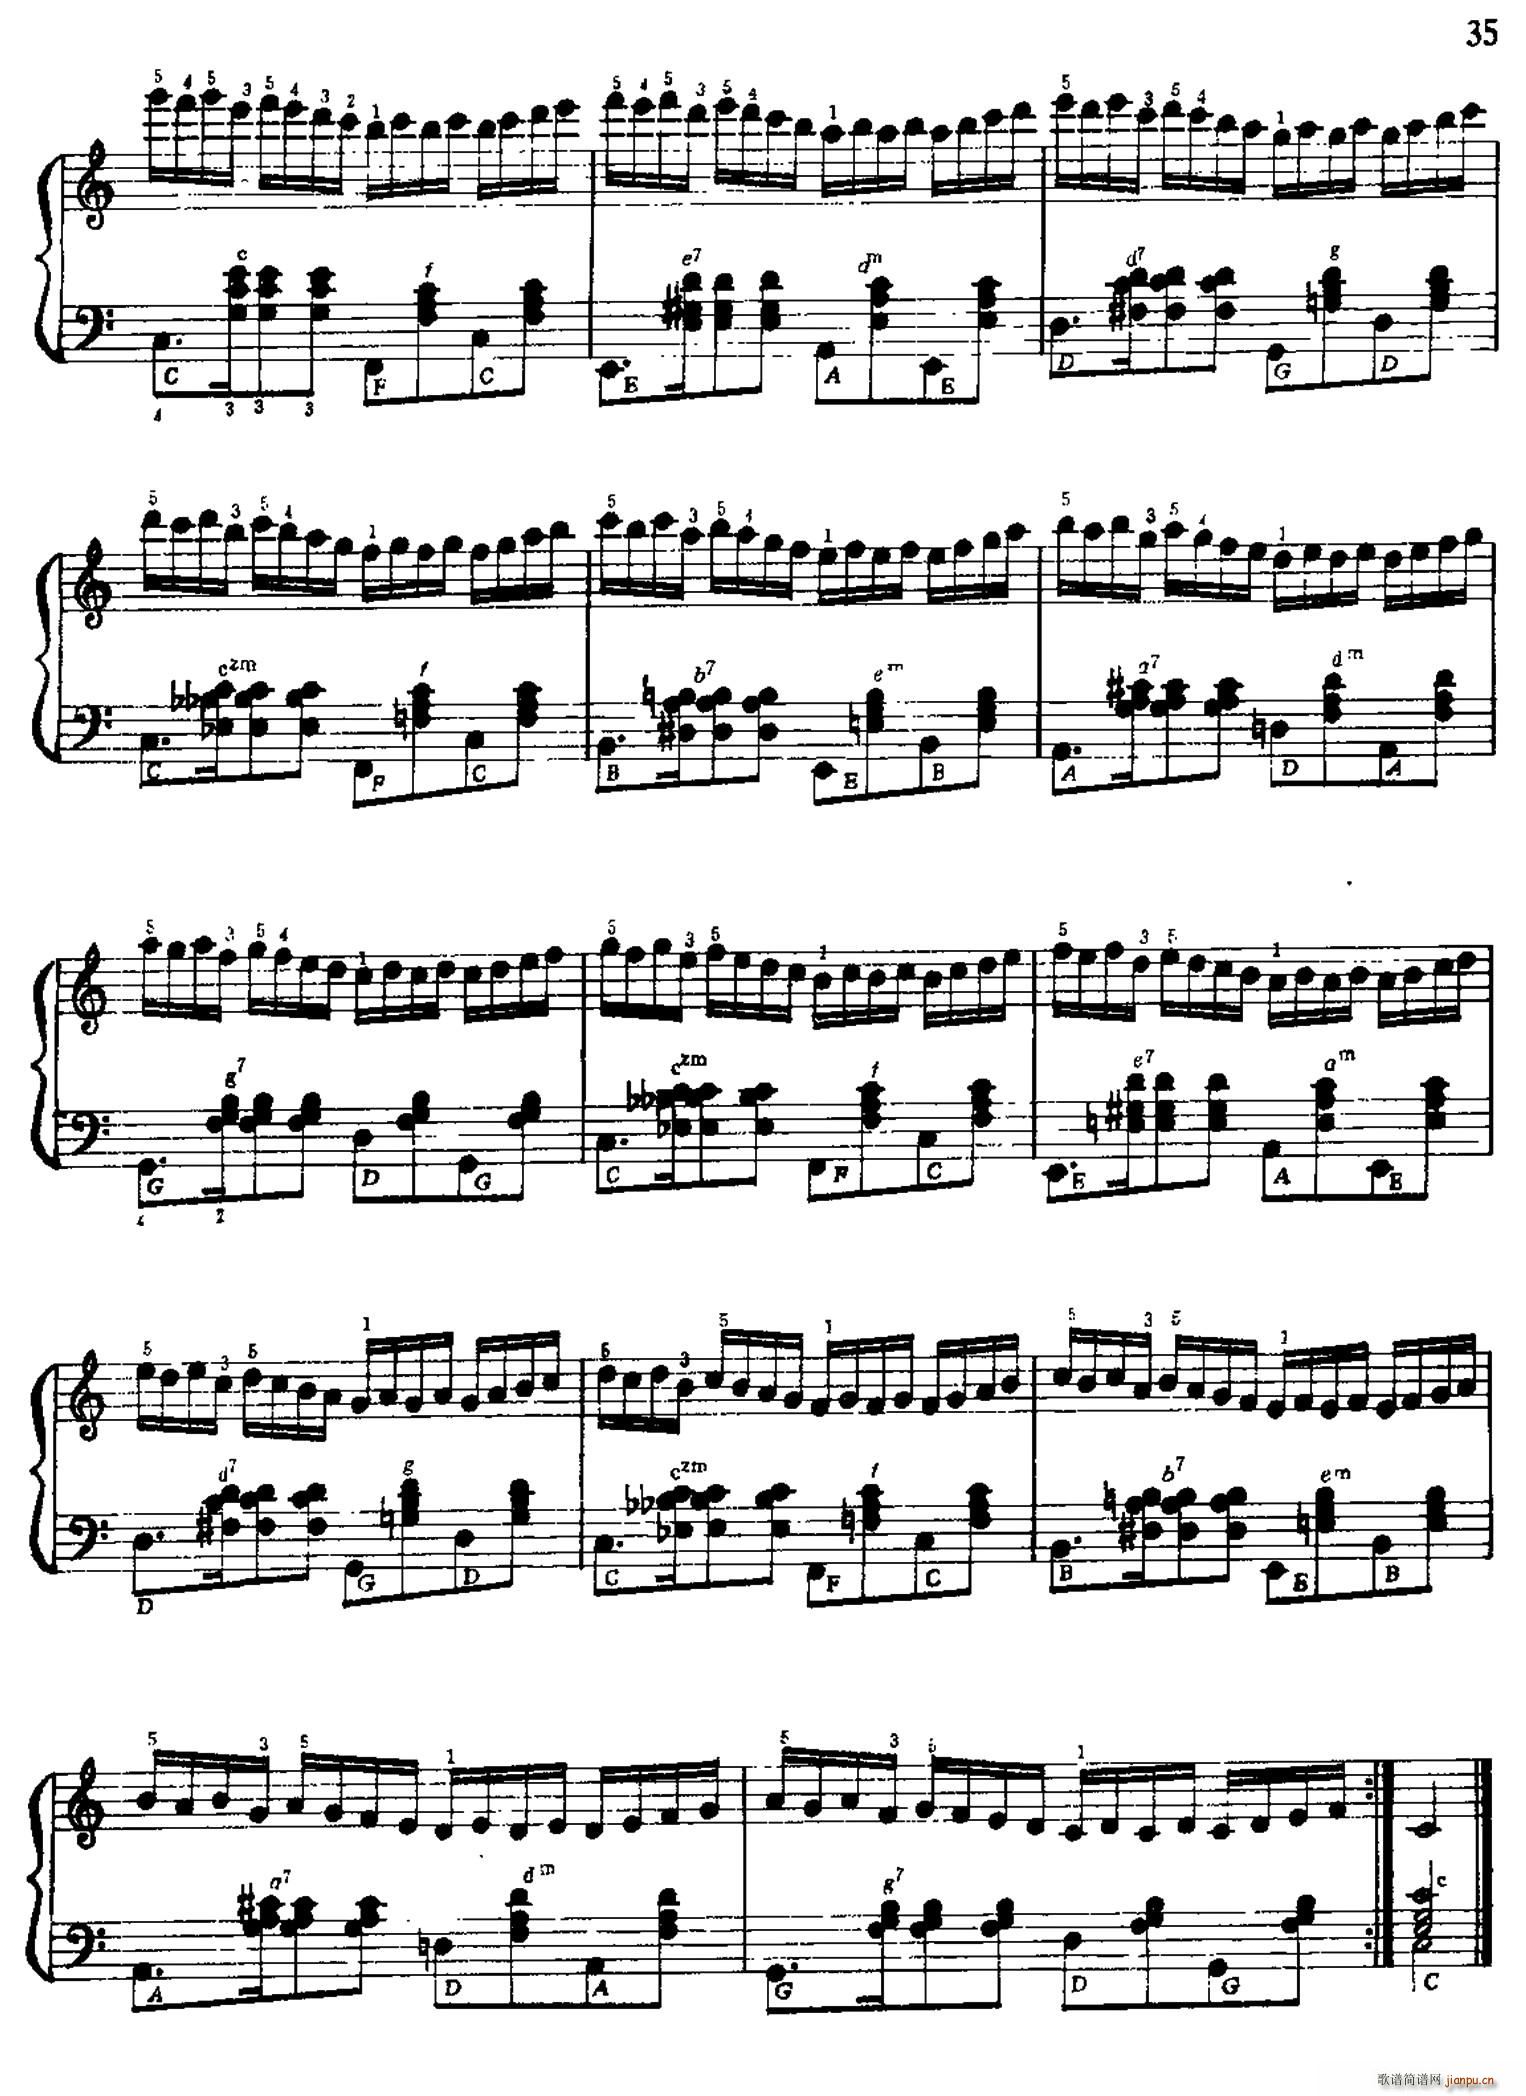 手风琴手指练习 第一部分 21 30(手风琴谱)14